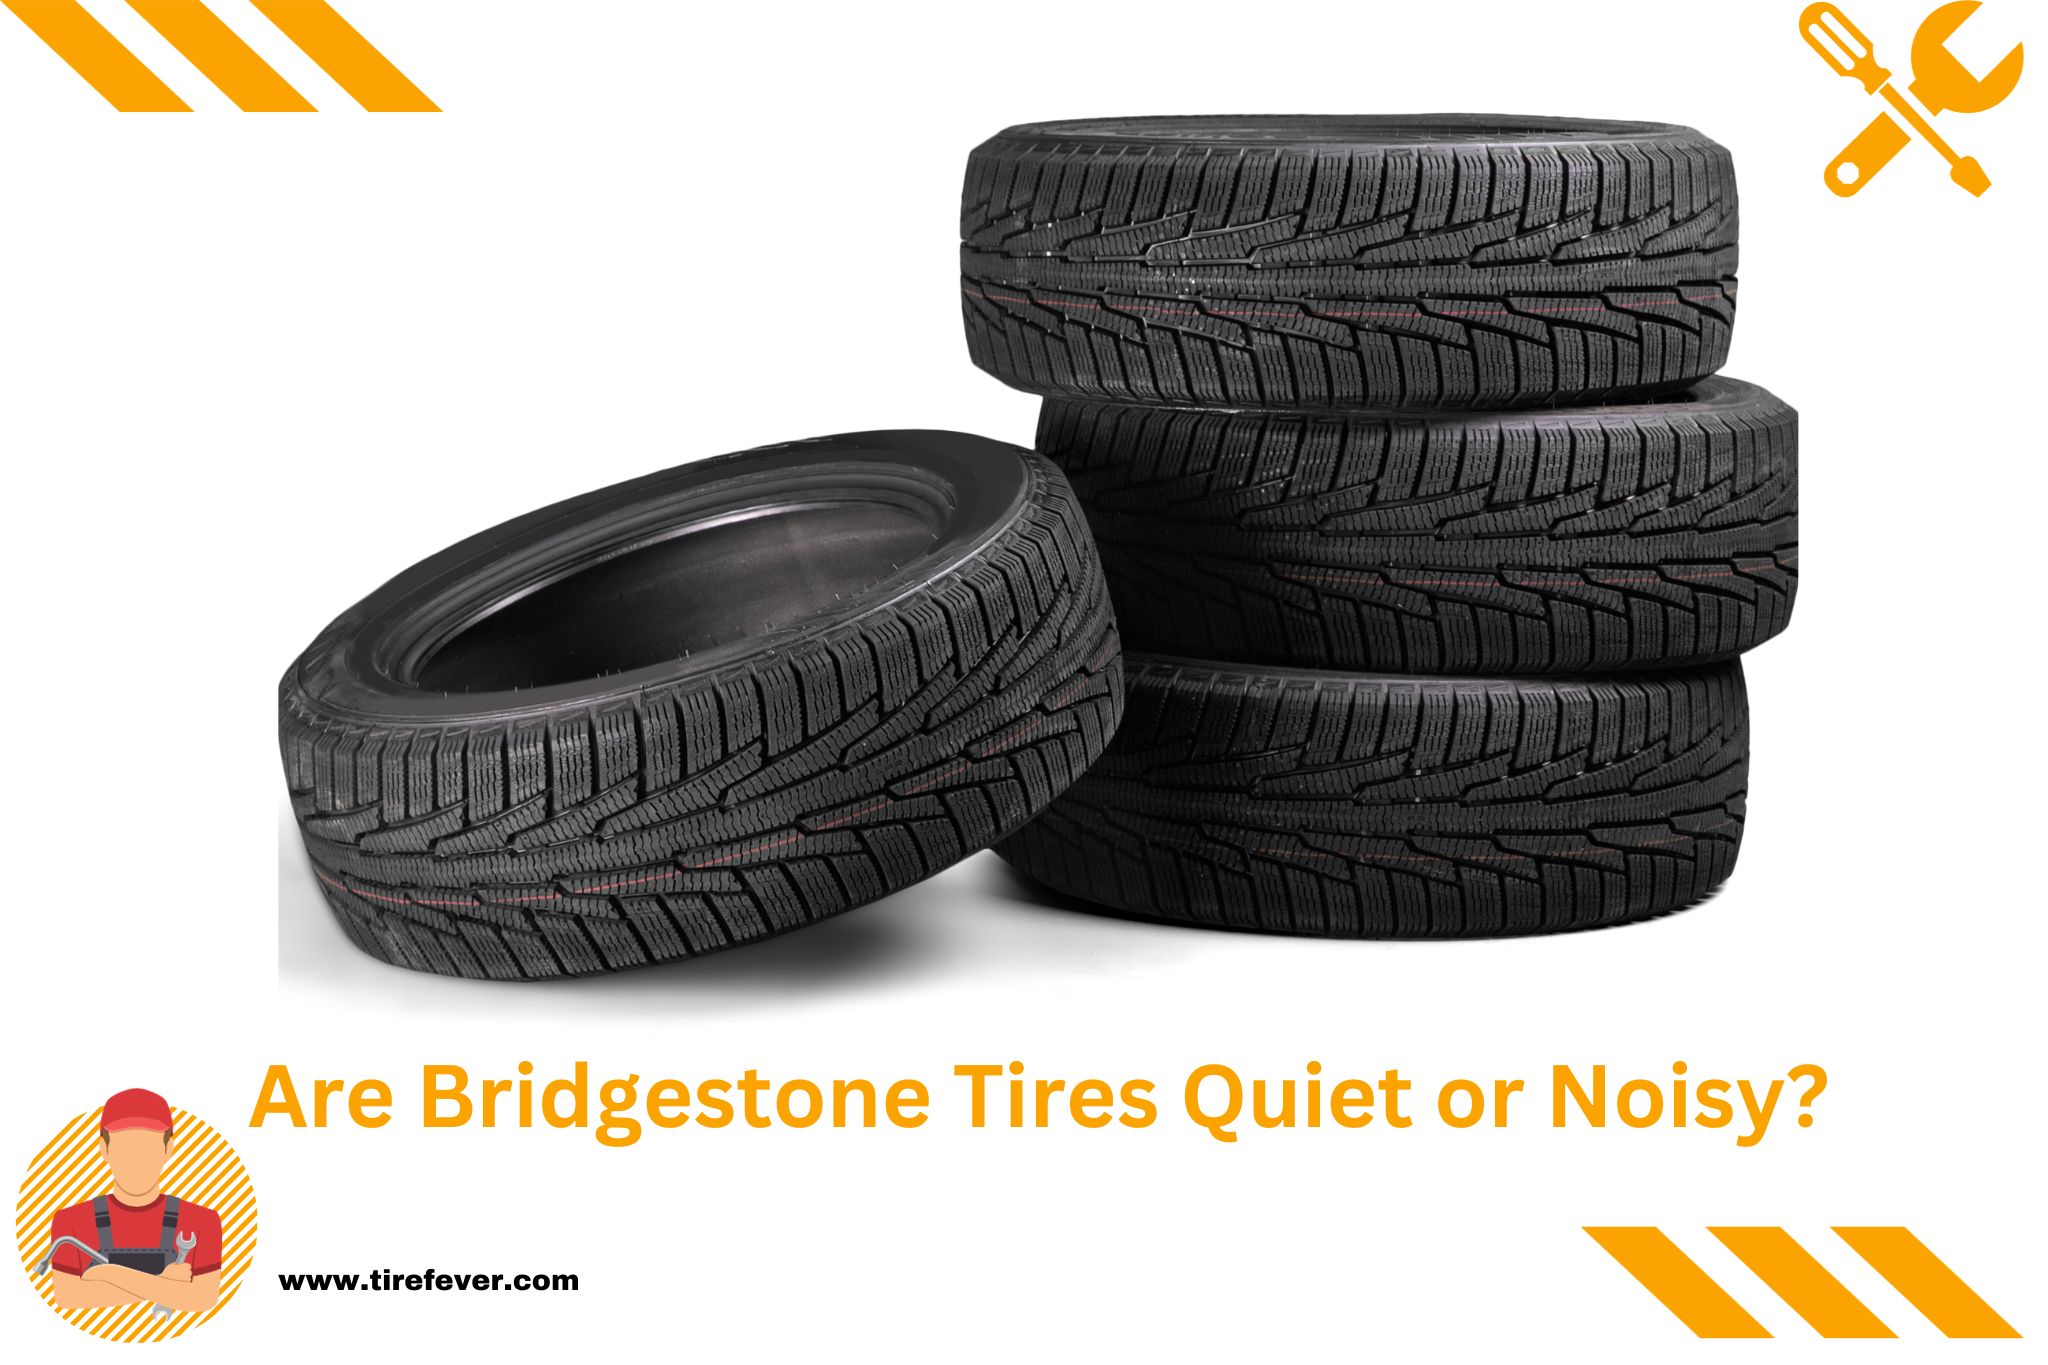 Are Bridgestone Tires Quiet or Noisy?